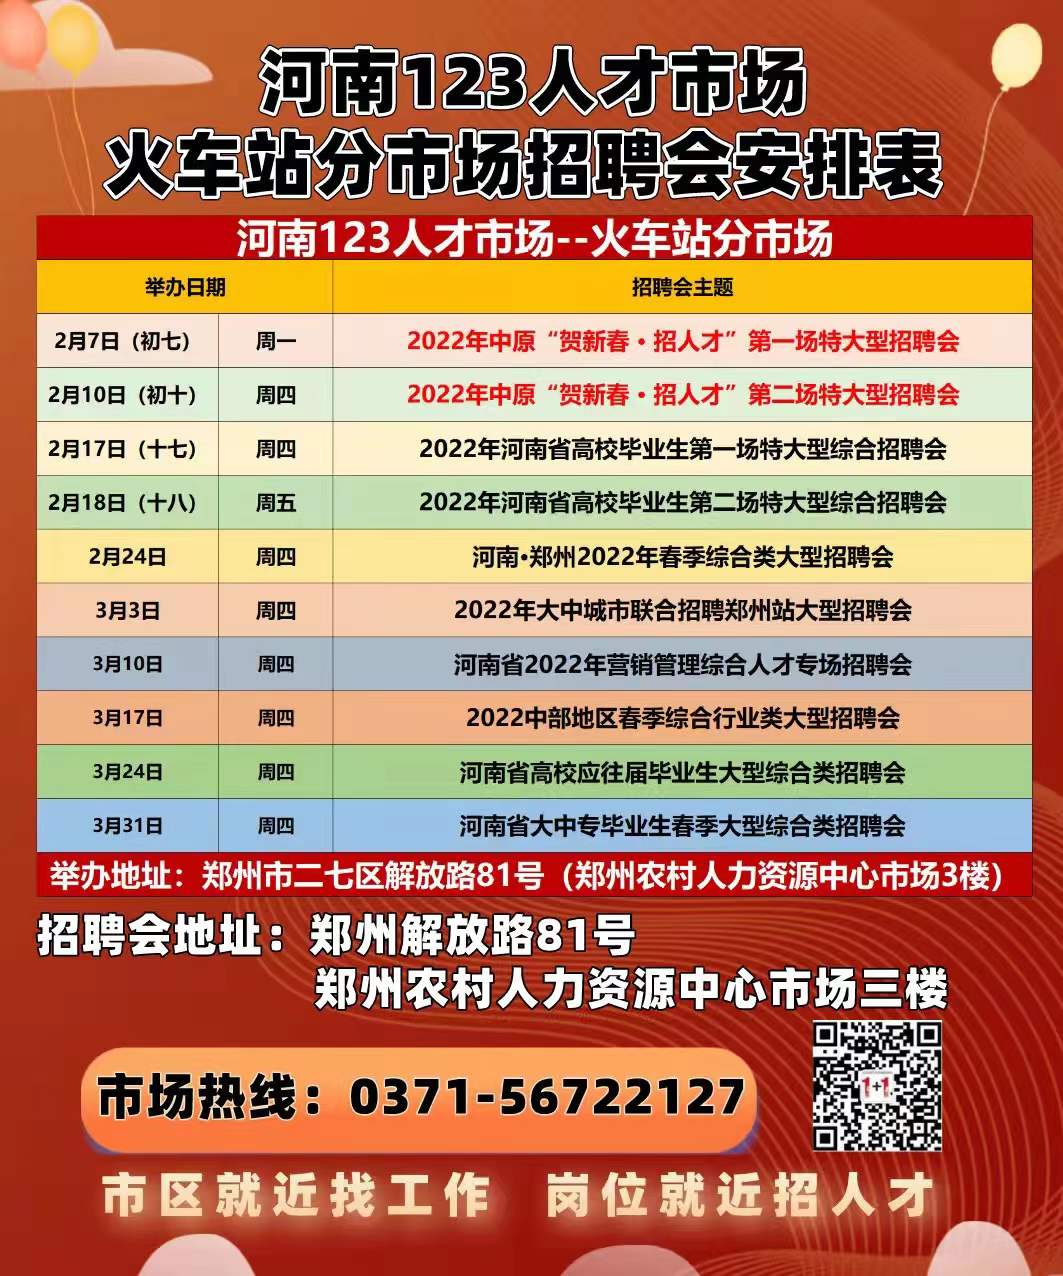 郑州延长网络招聘服务至本月底 春节后线下招聘会在正月初七